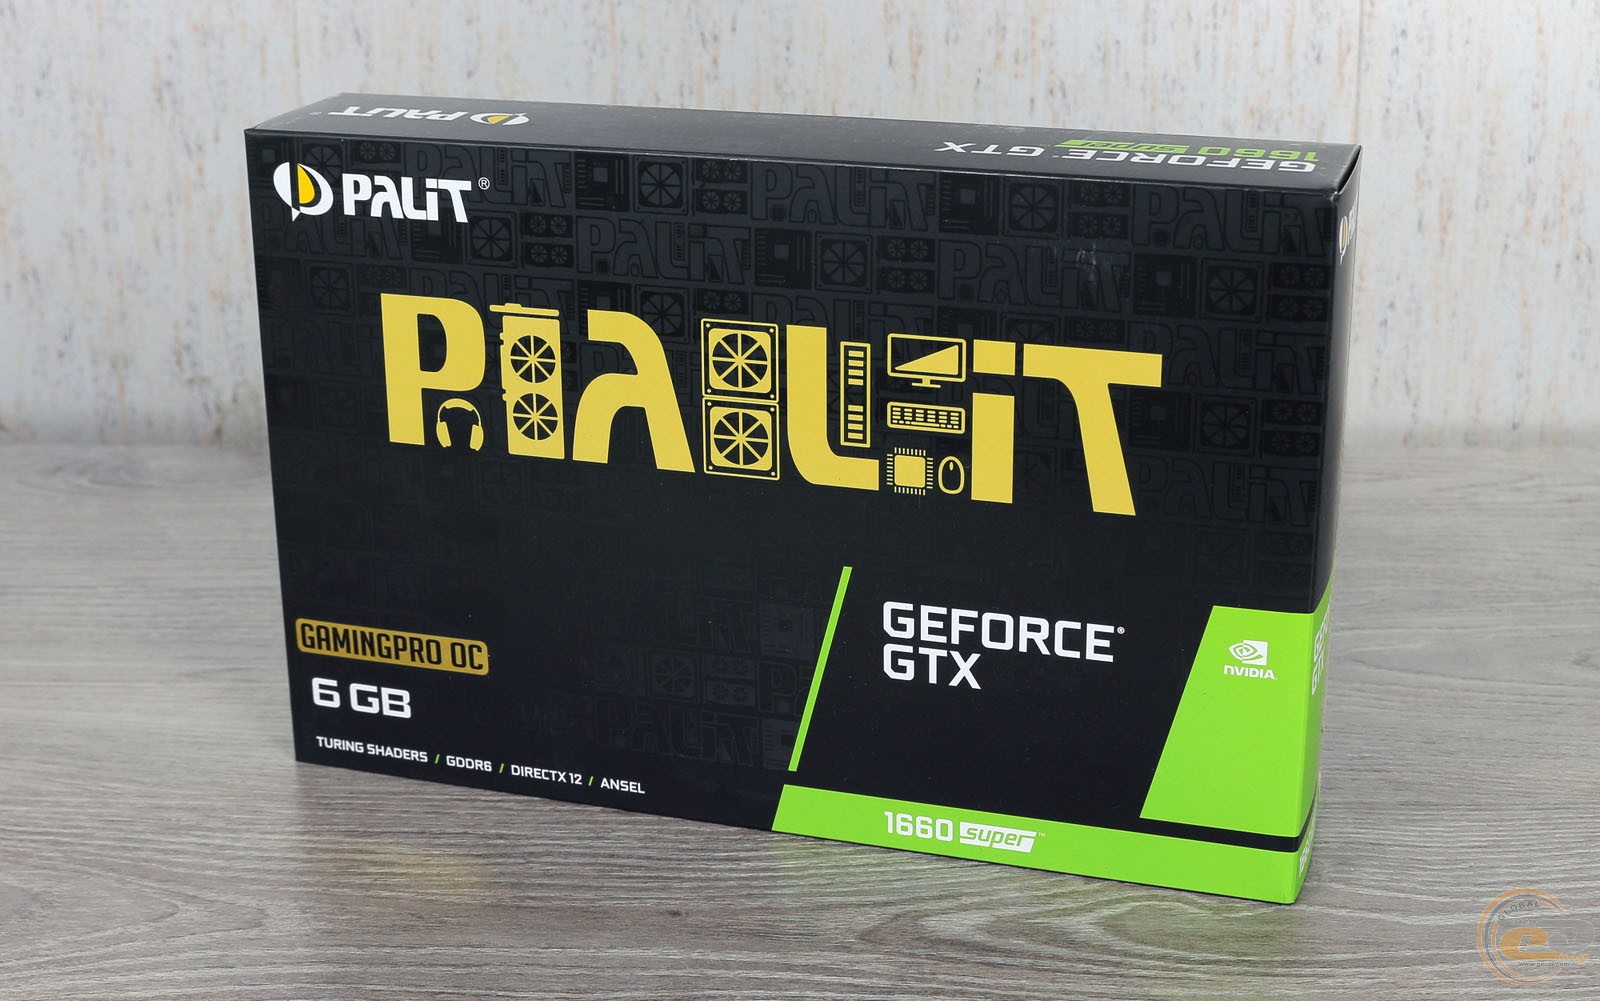 Palit geforce gtx 1660 gaming pro. GTX 1660 super Palit. Palit GEFORCE GTX 1660 super GP OC 6gb. Palit GEFORCE GTX 1660 super 6gb. Palit GTX 1660 super Gaming Pro 6gb.